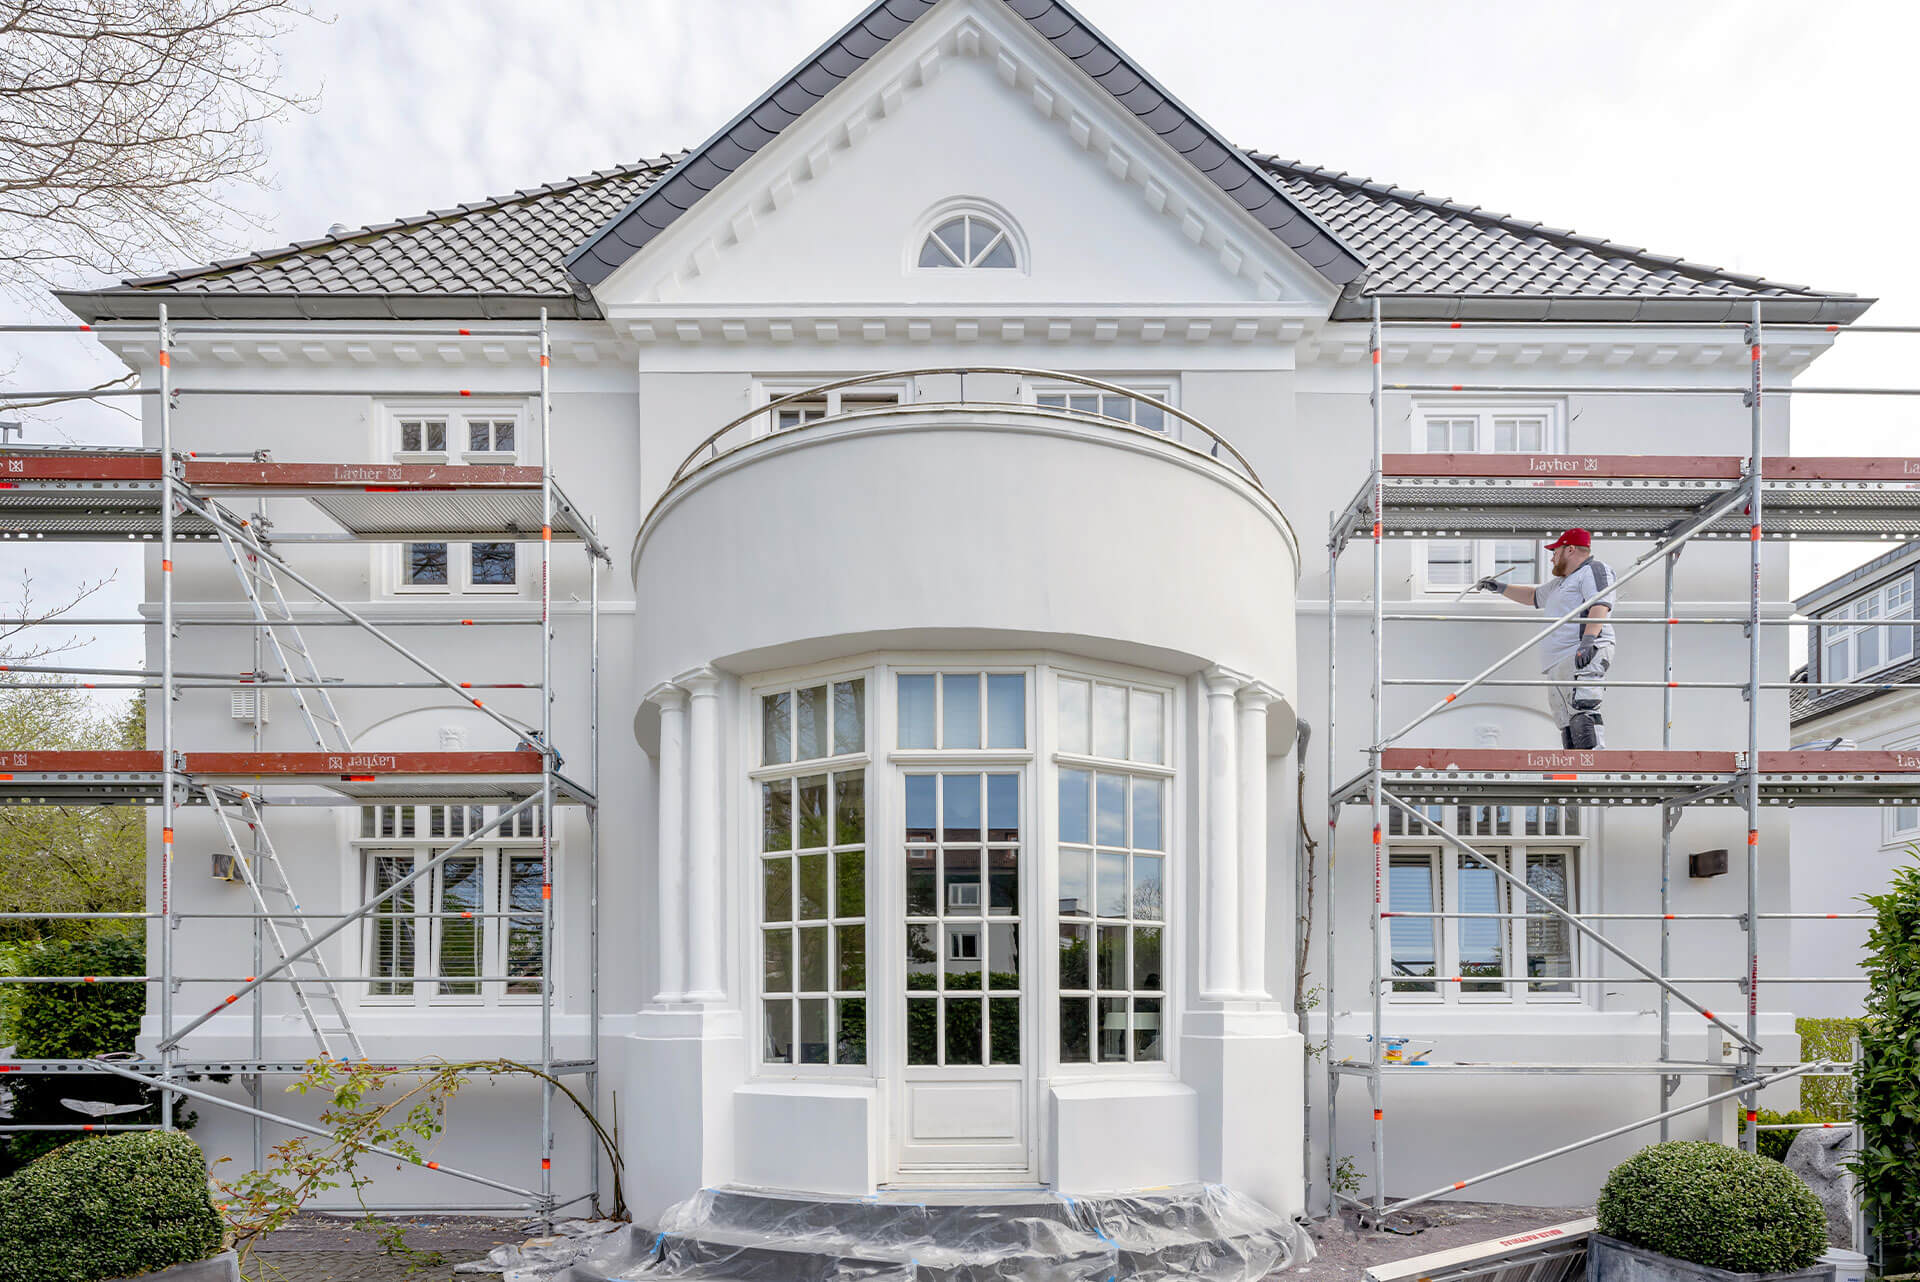 Fassadenrenovierung und Malern von Sprossenfenstern einer Villa in Hamburg